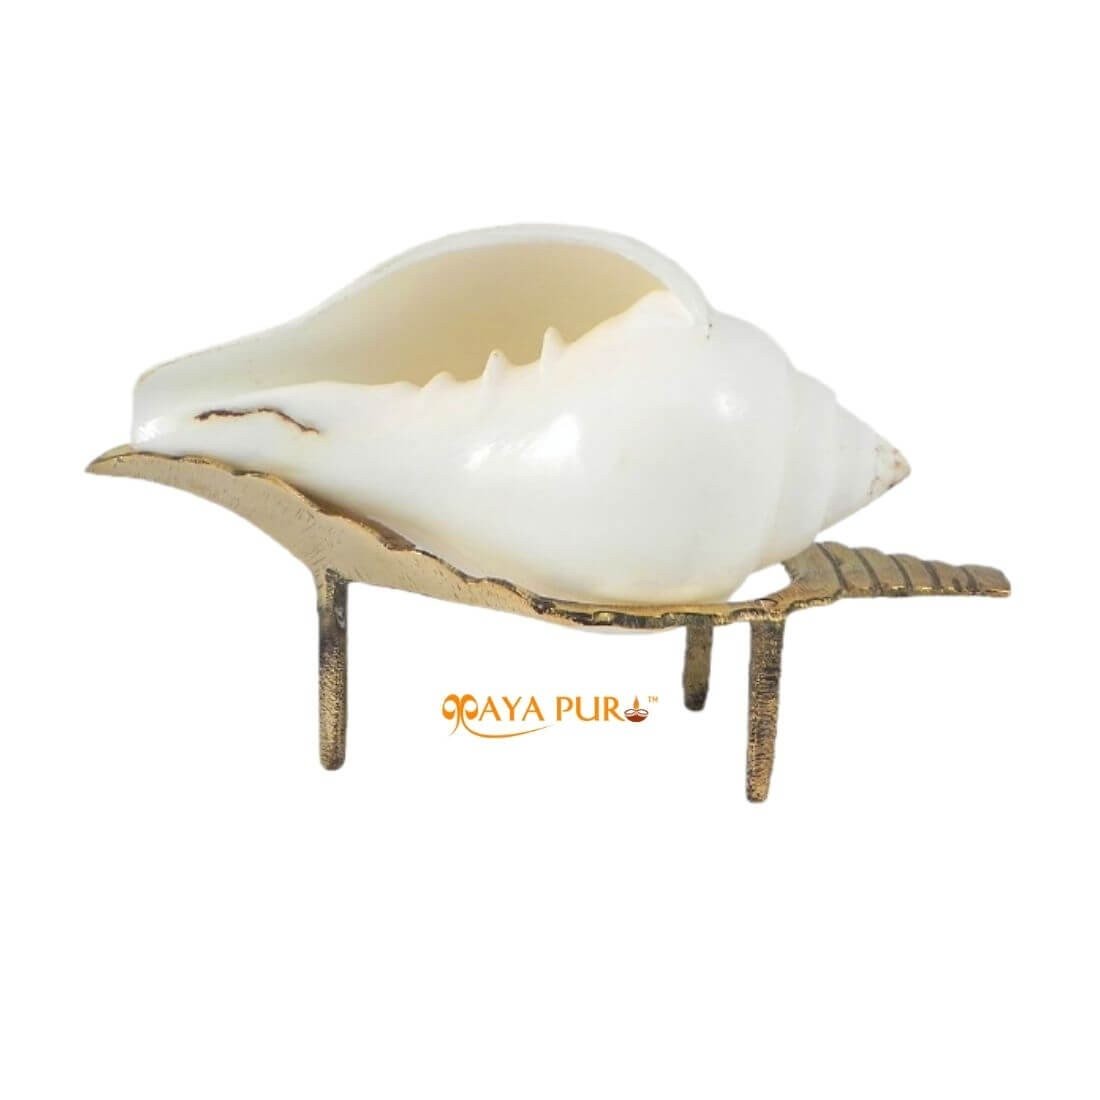 MAYAPURI Natural Puja Shankha/Jal Sankha | White Conch Shells with Sankha Stand